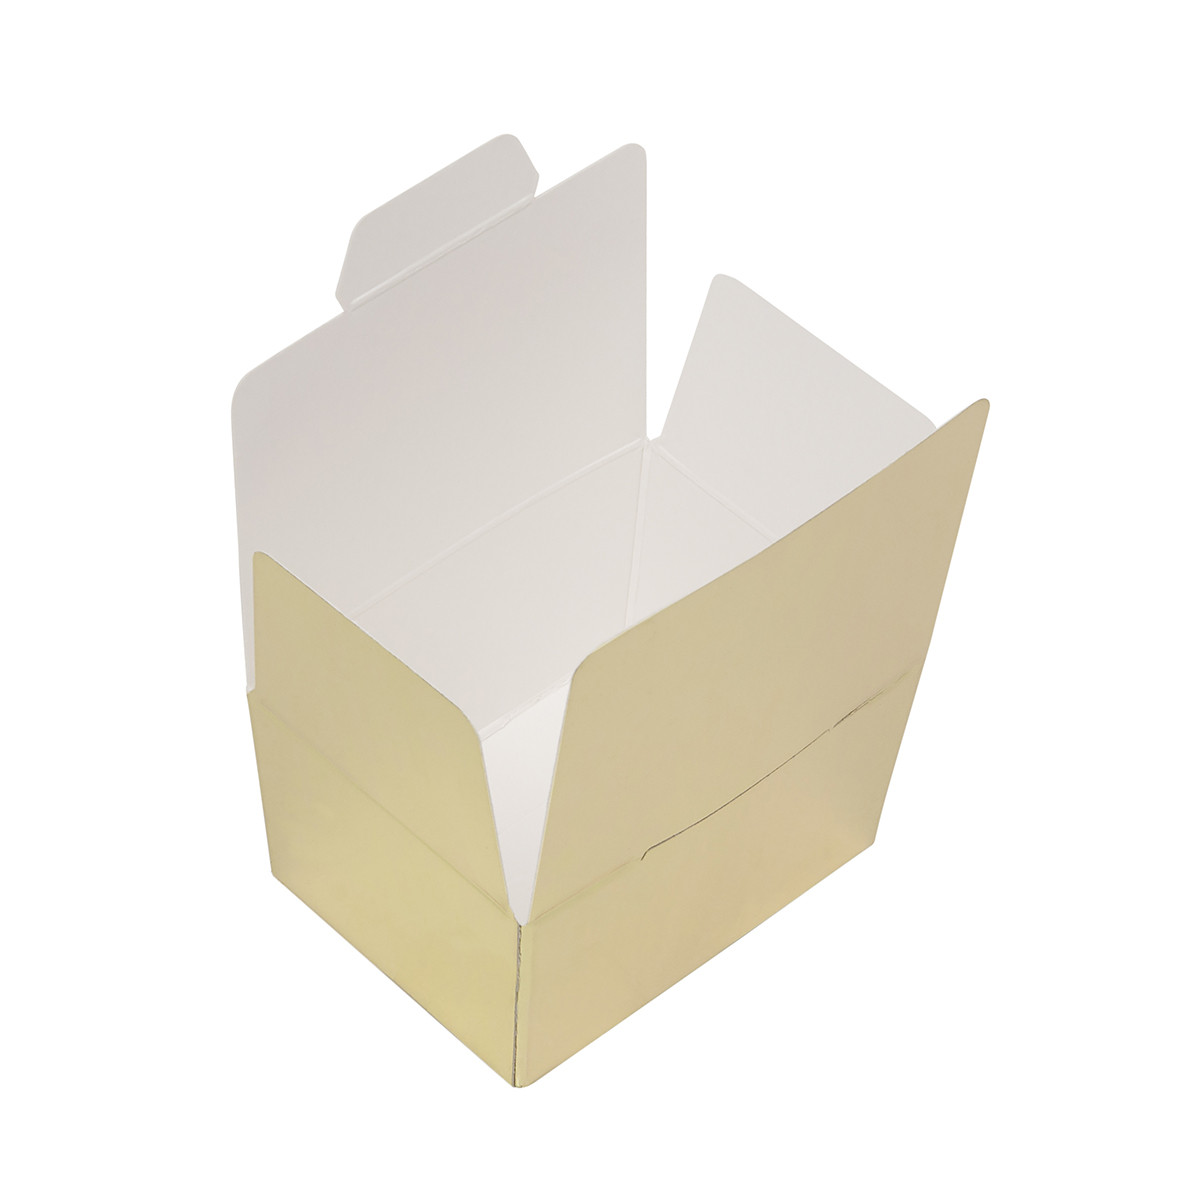 Bonbon box Gold Metallic -125 grams- 3 pieces